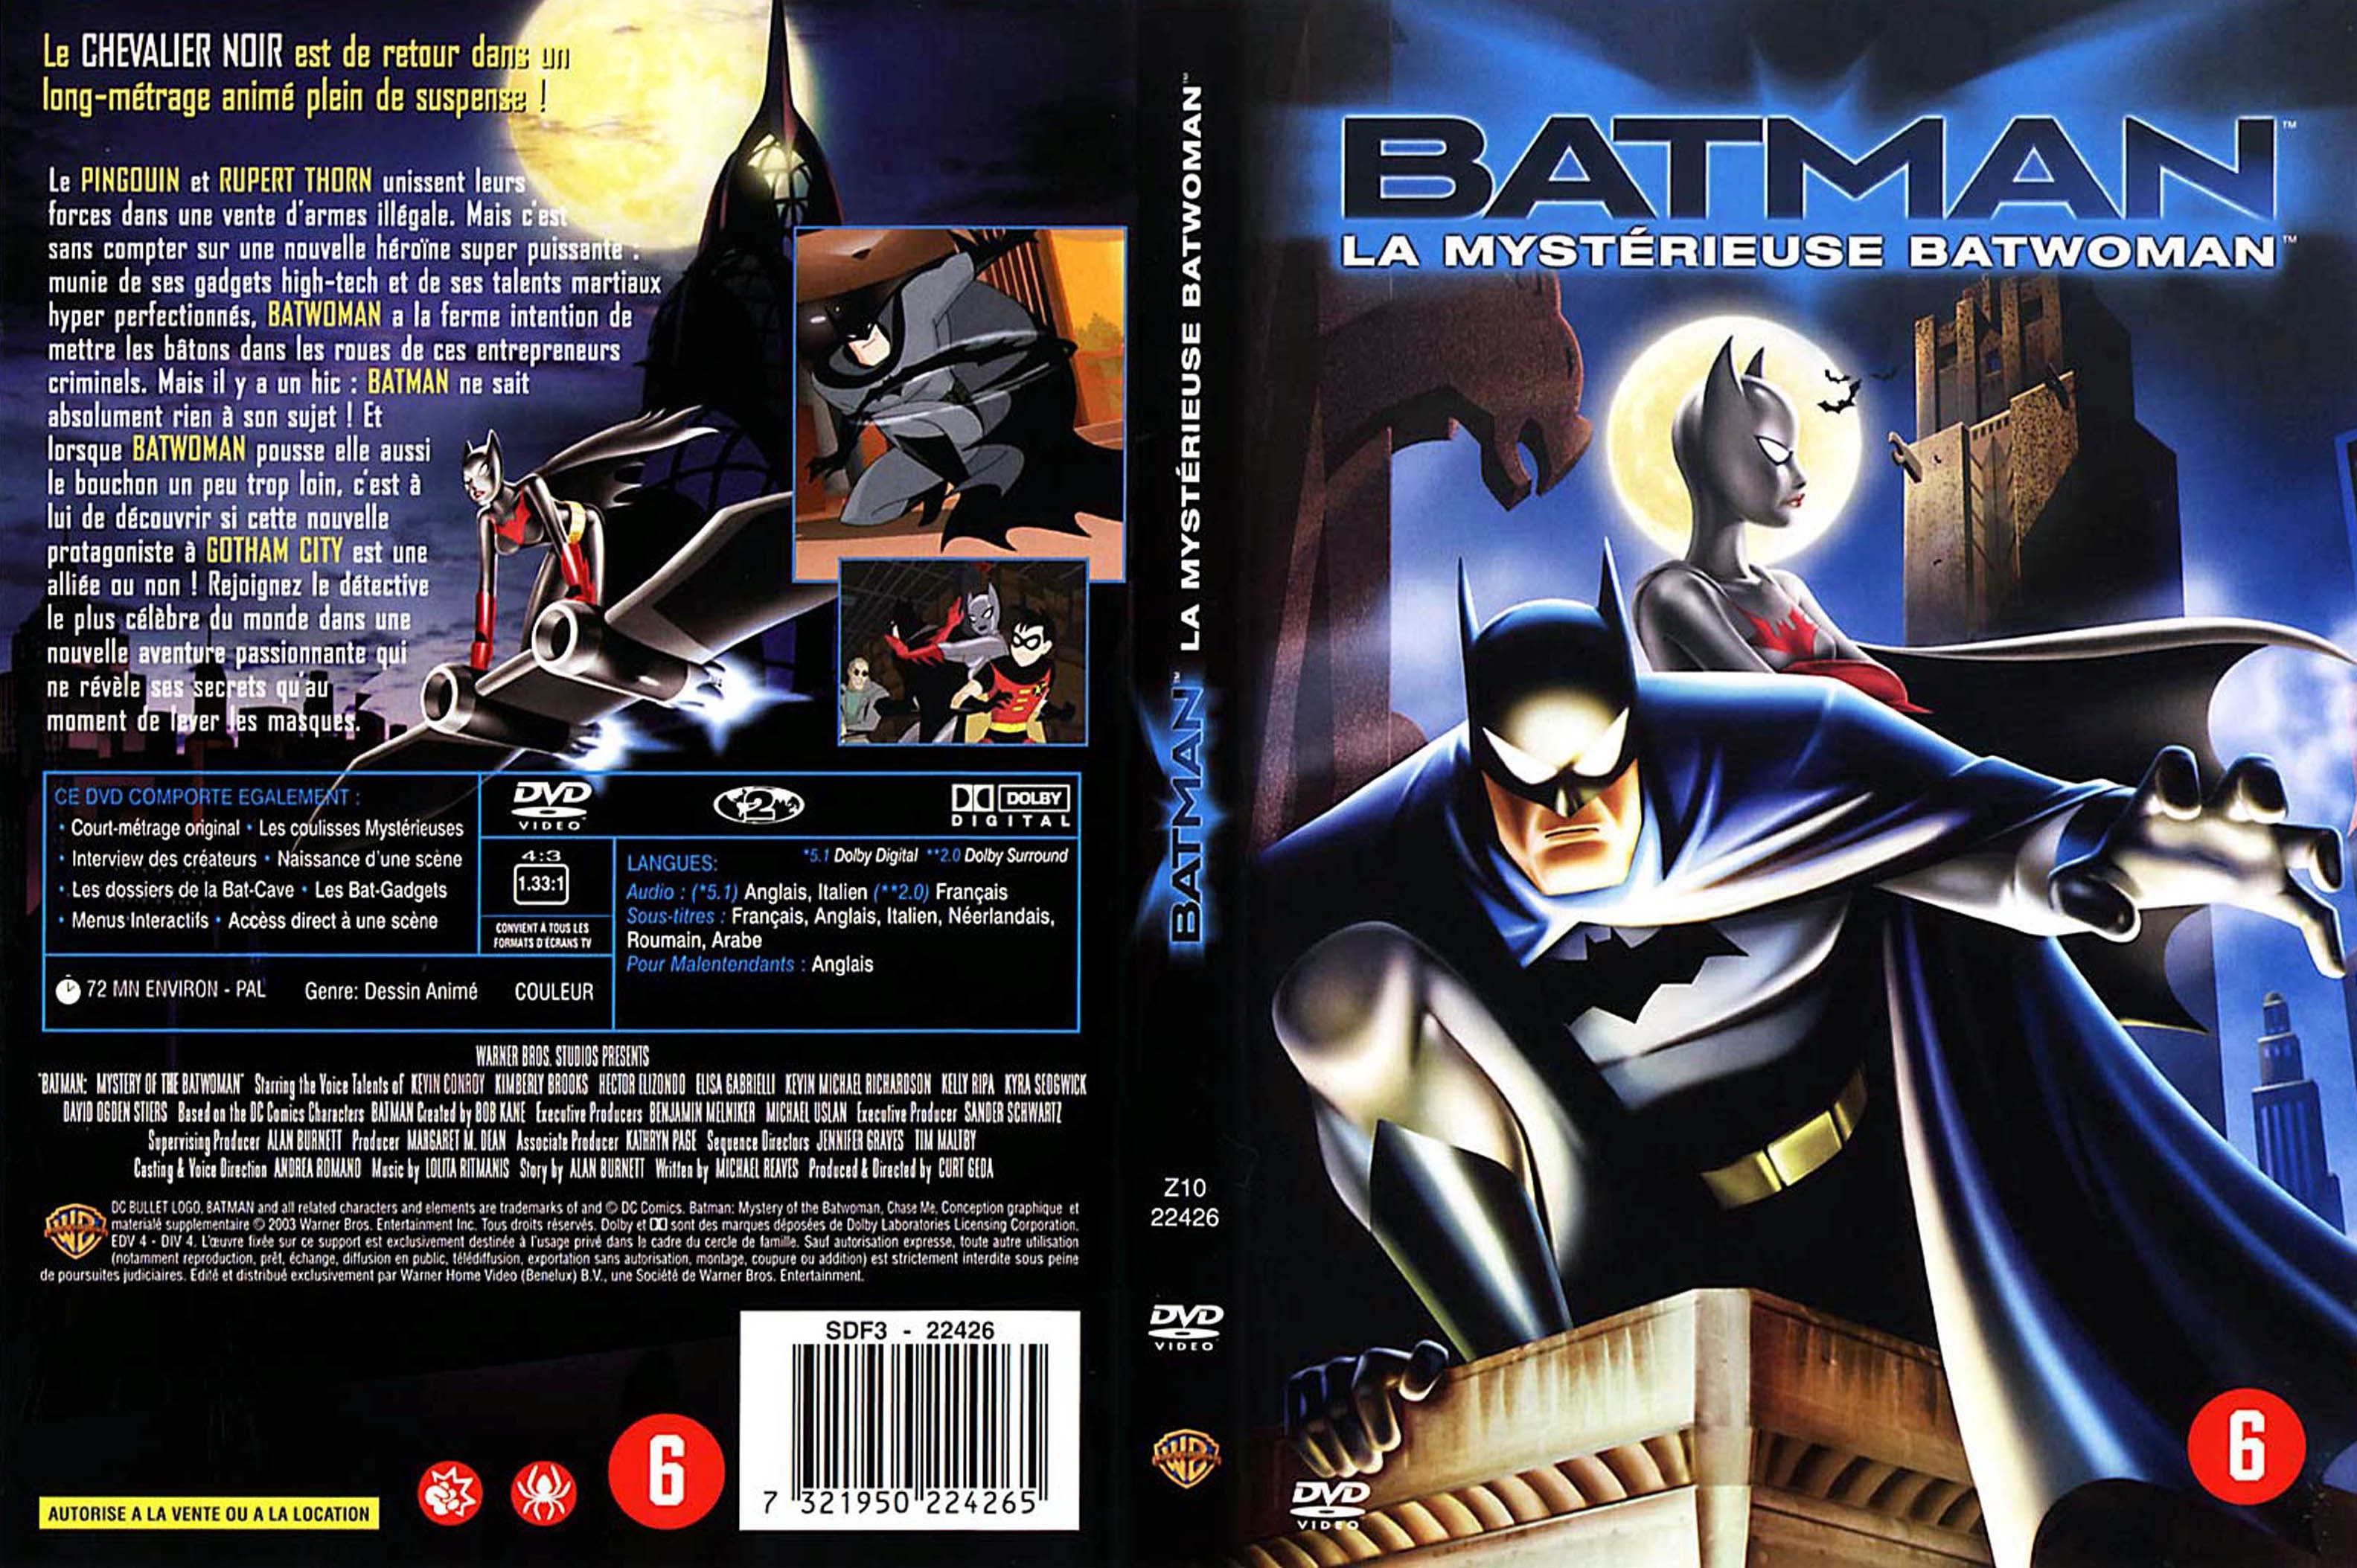 Jaquette DVD Batman la mysterieuse batwoman